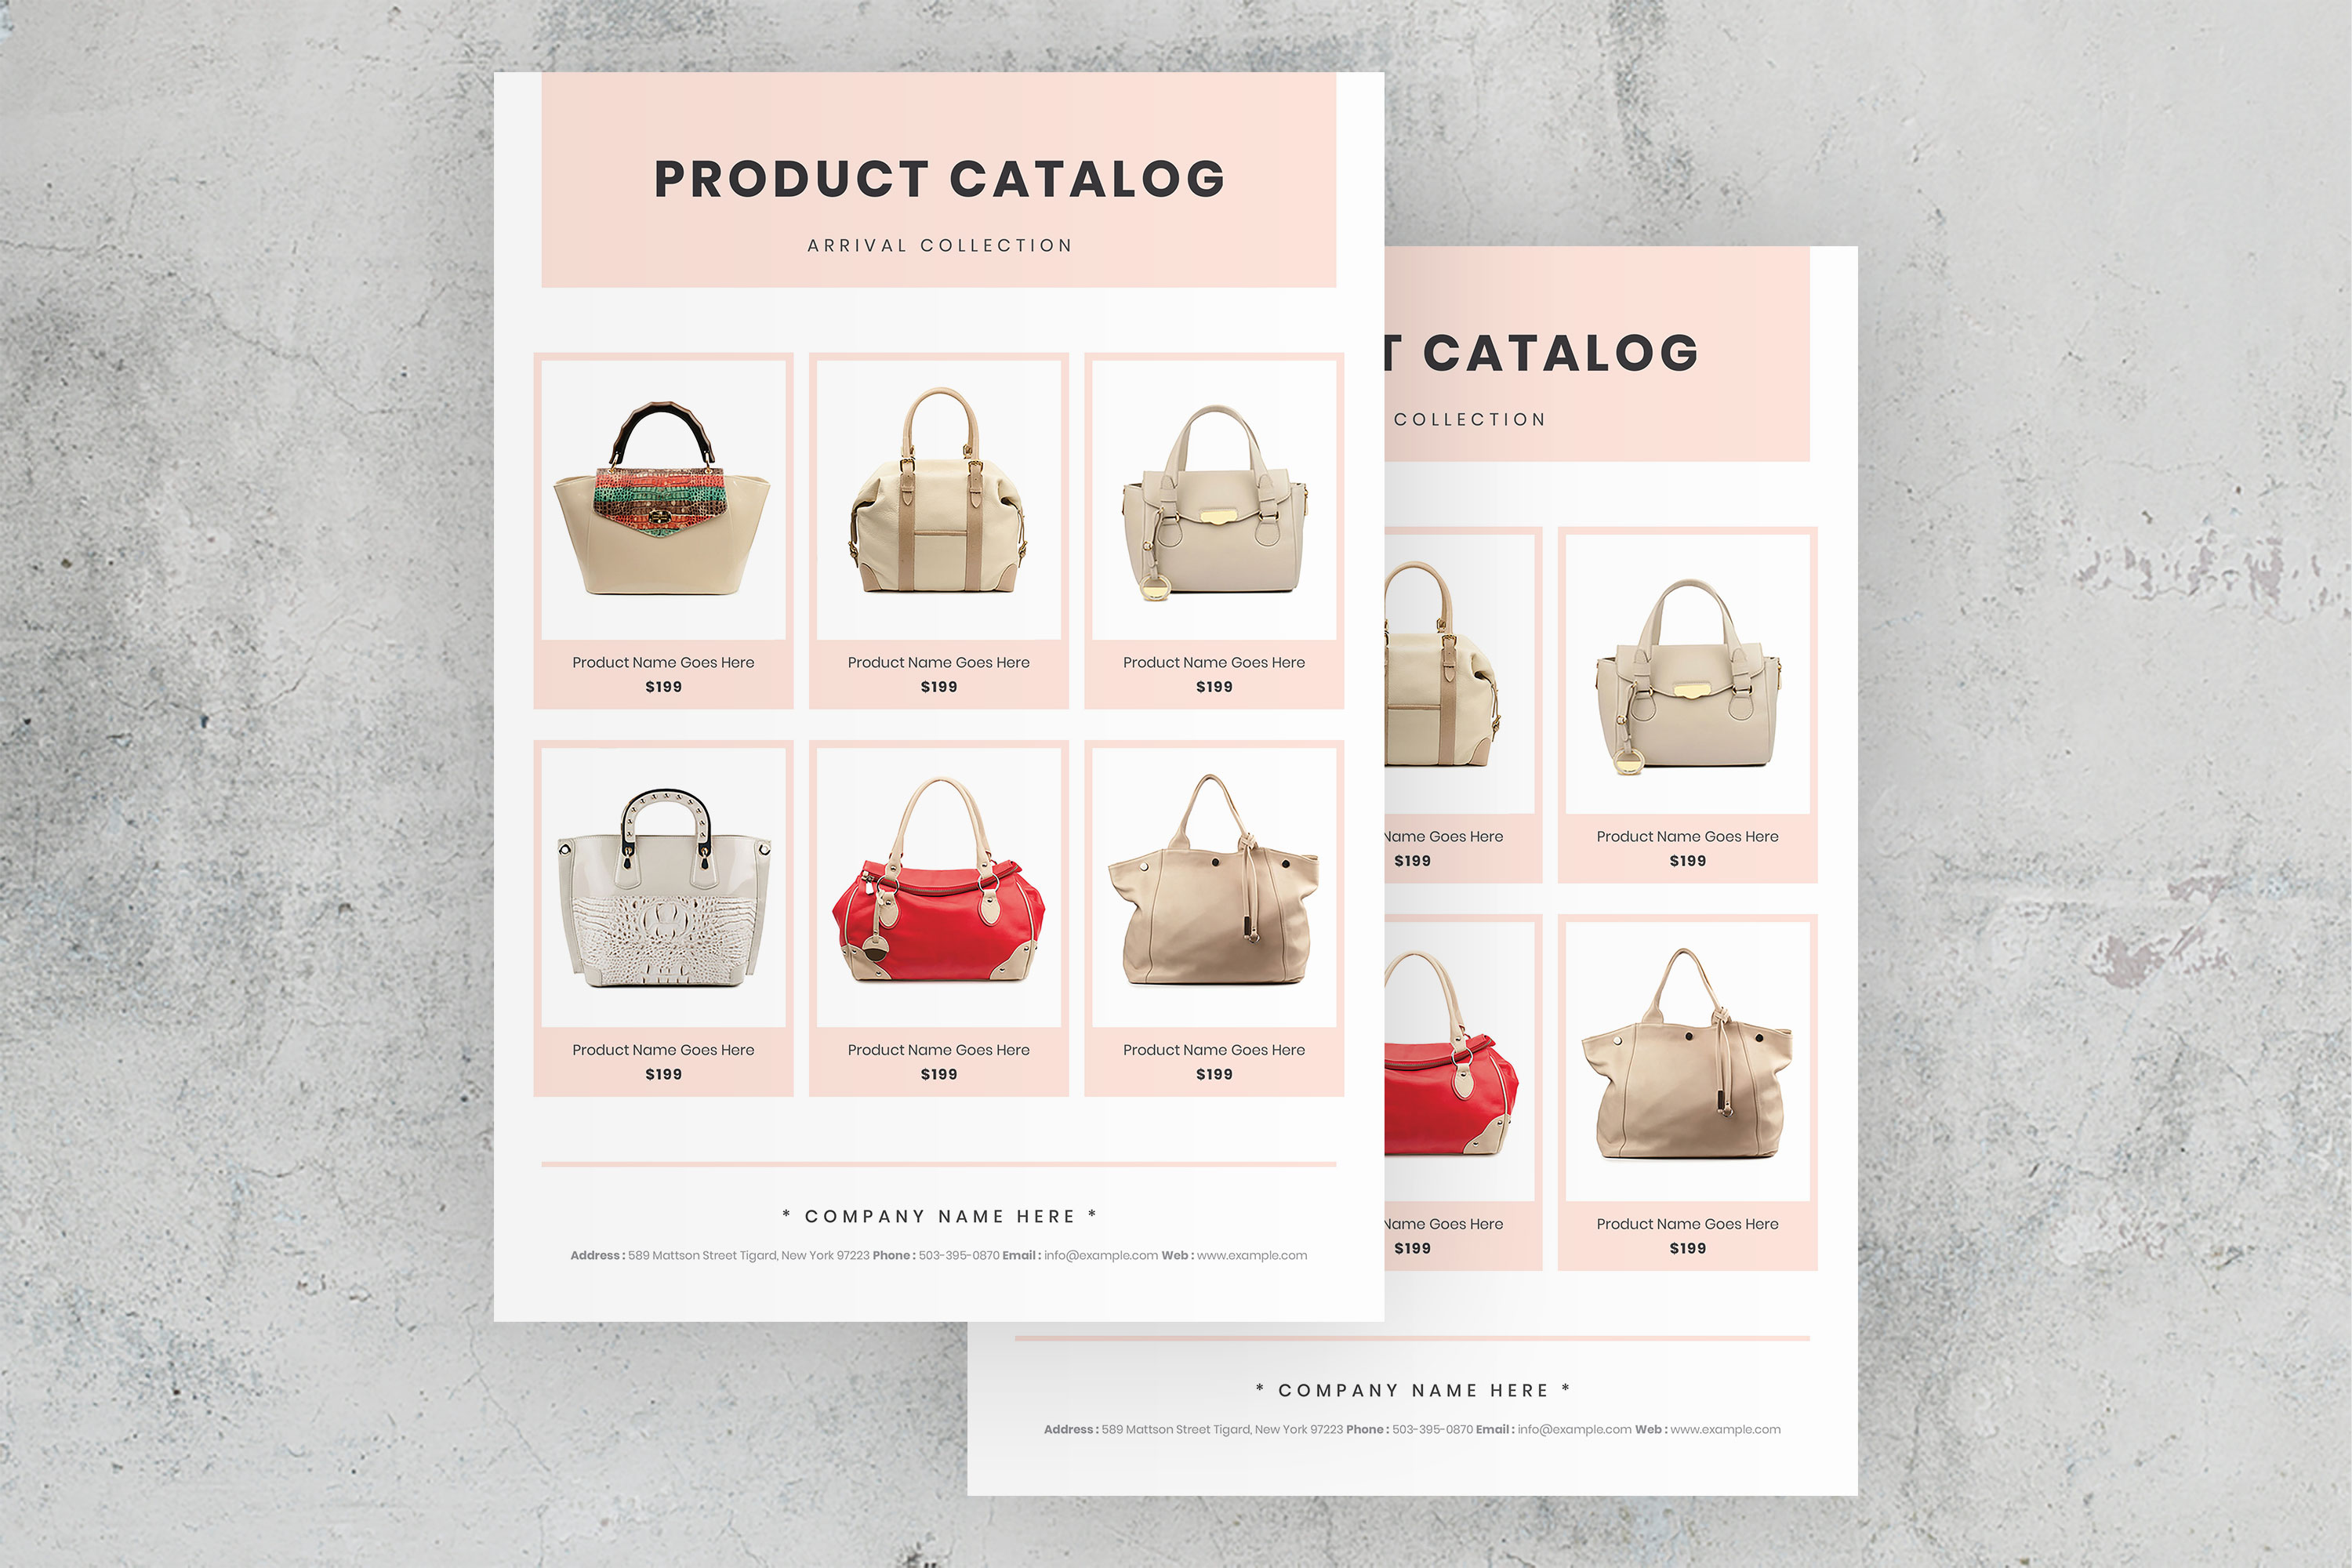 Products aspx product. Product catalog. Шаблон каталога товаров. Каталог продукции дизайн. Оформление каталога.